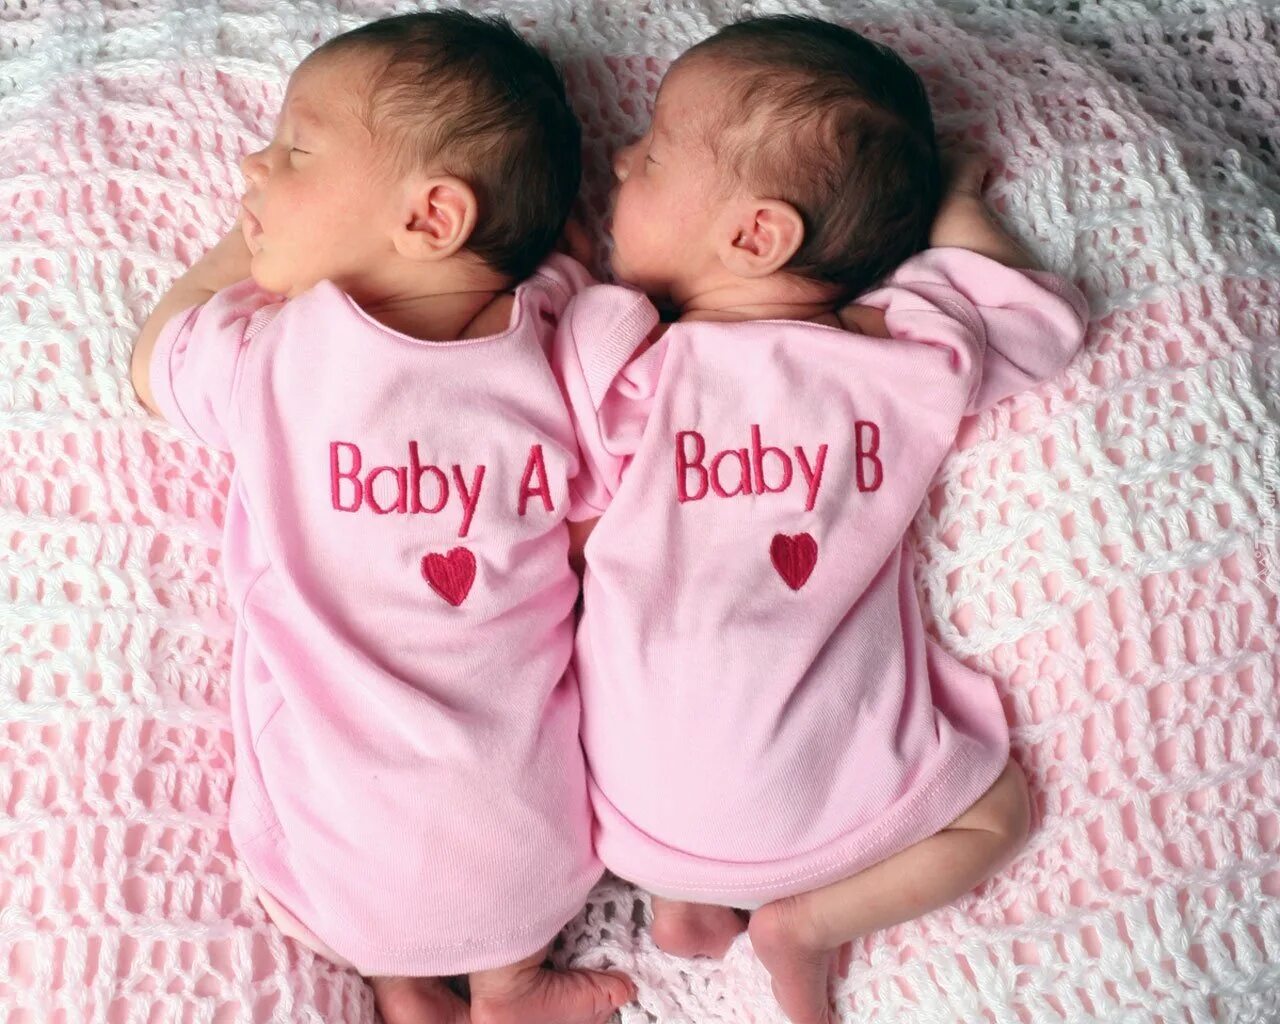 С днём рождения двойняшек. С днём рождения двойняшек девочек. Поздравляю с рождением близняшек. С рождением близнецов девочек.